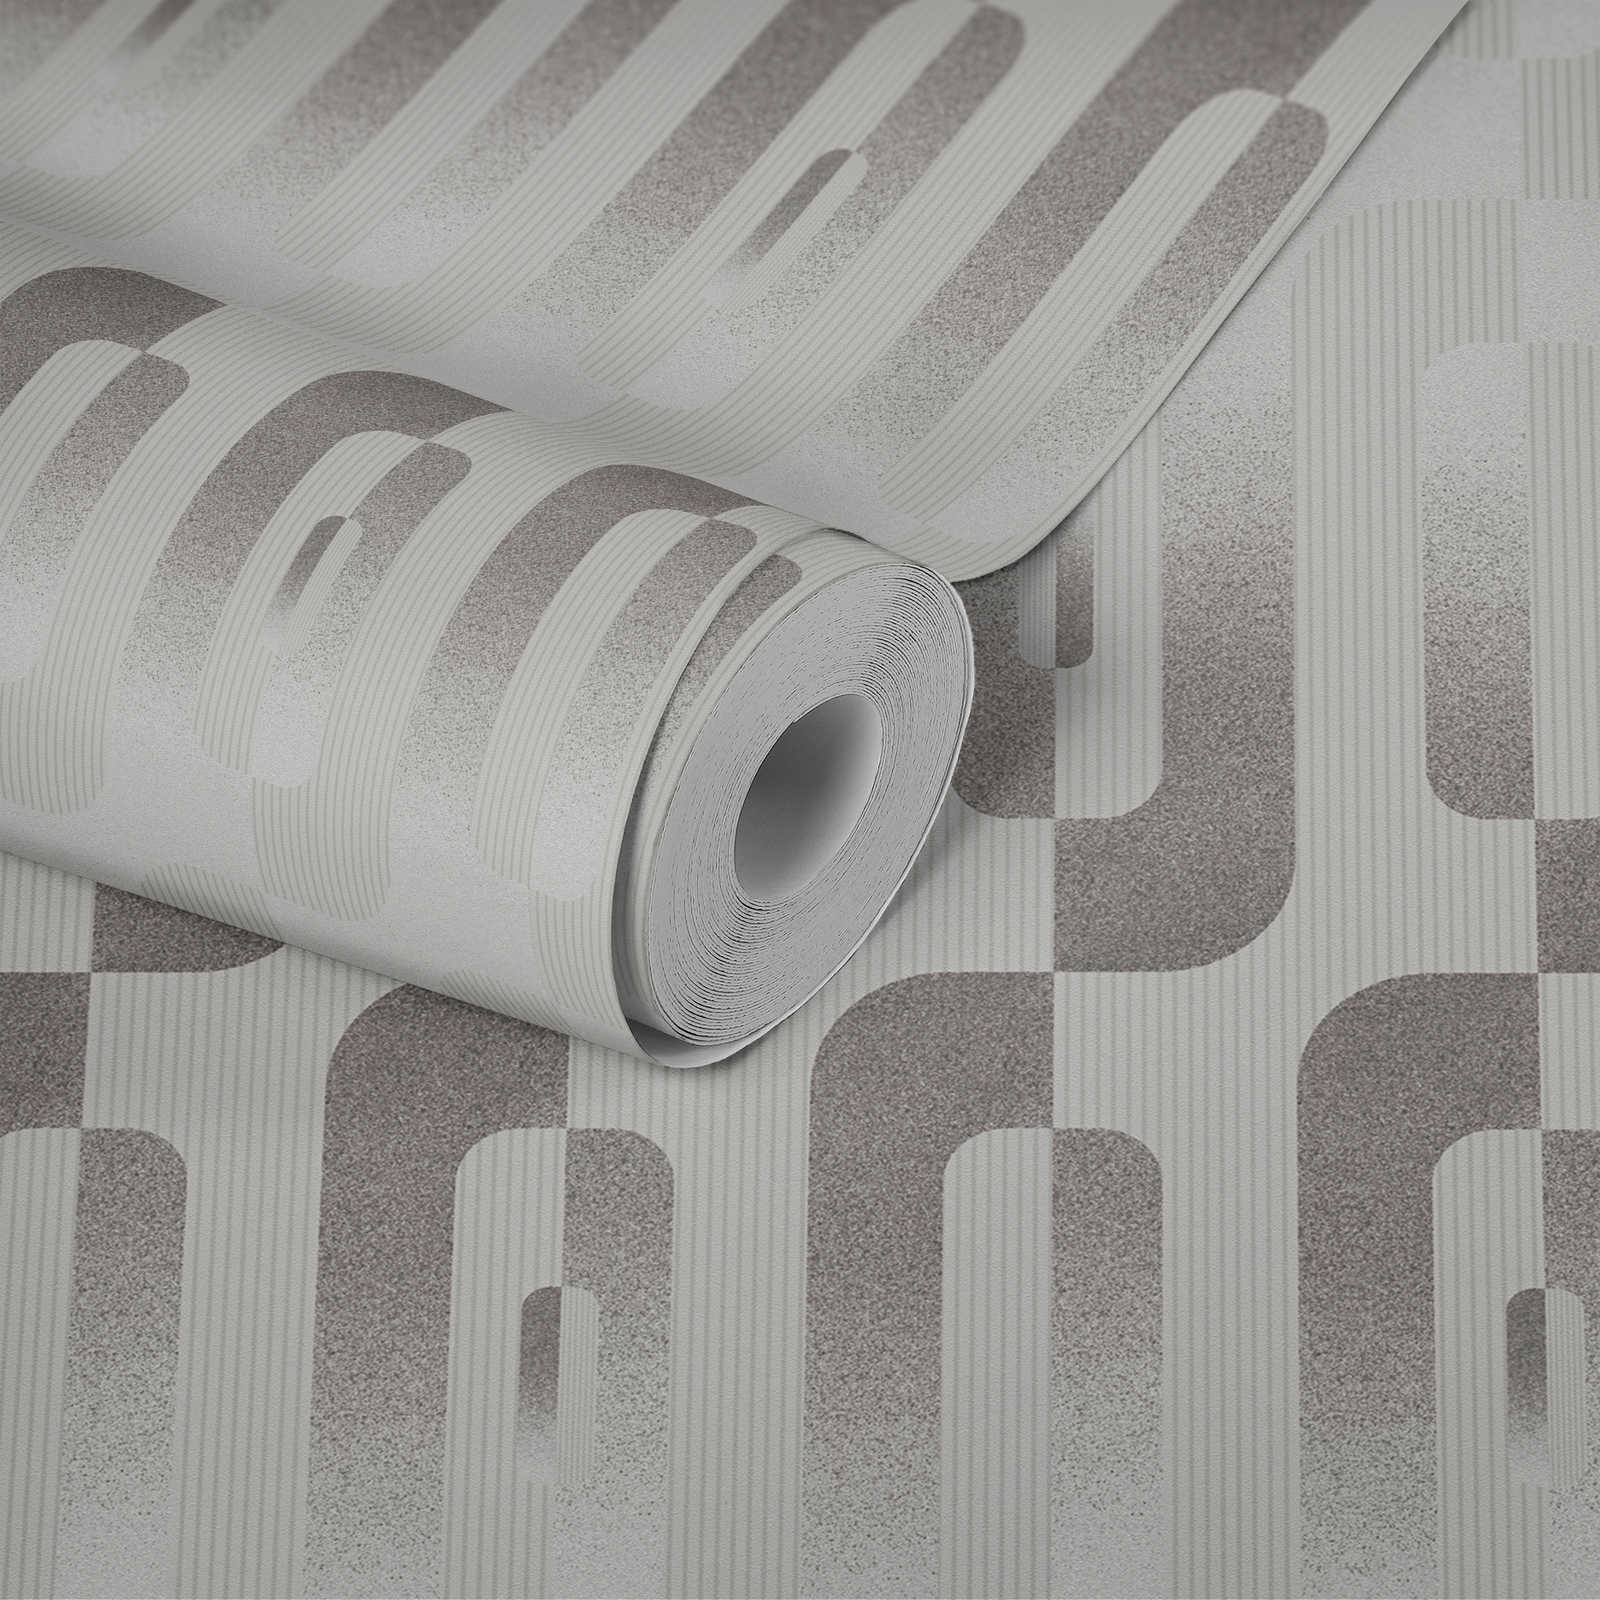             Grafik-Tapete mit Reto Muster in Grau und Silber
        